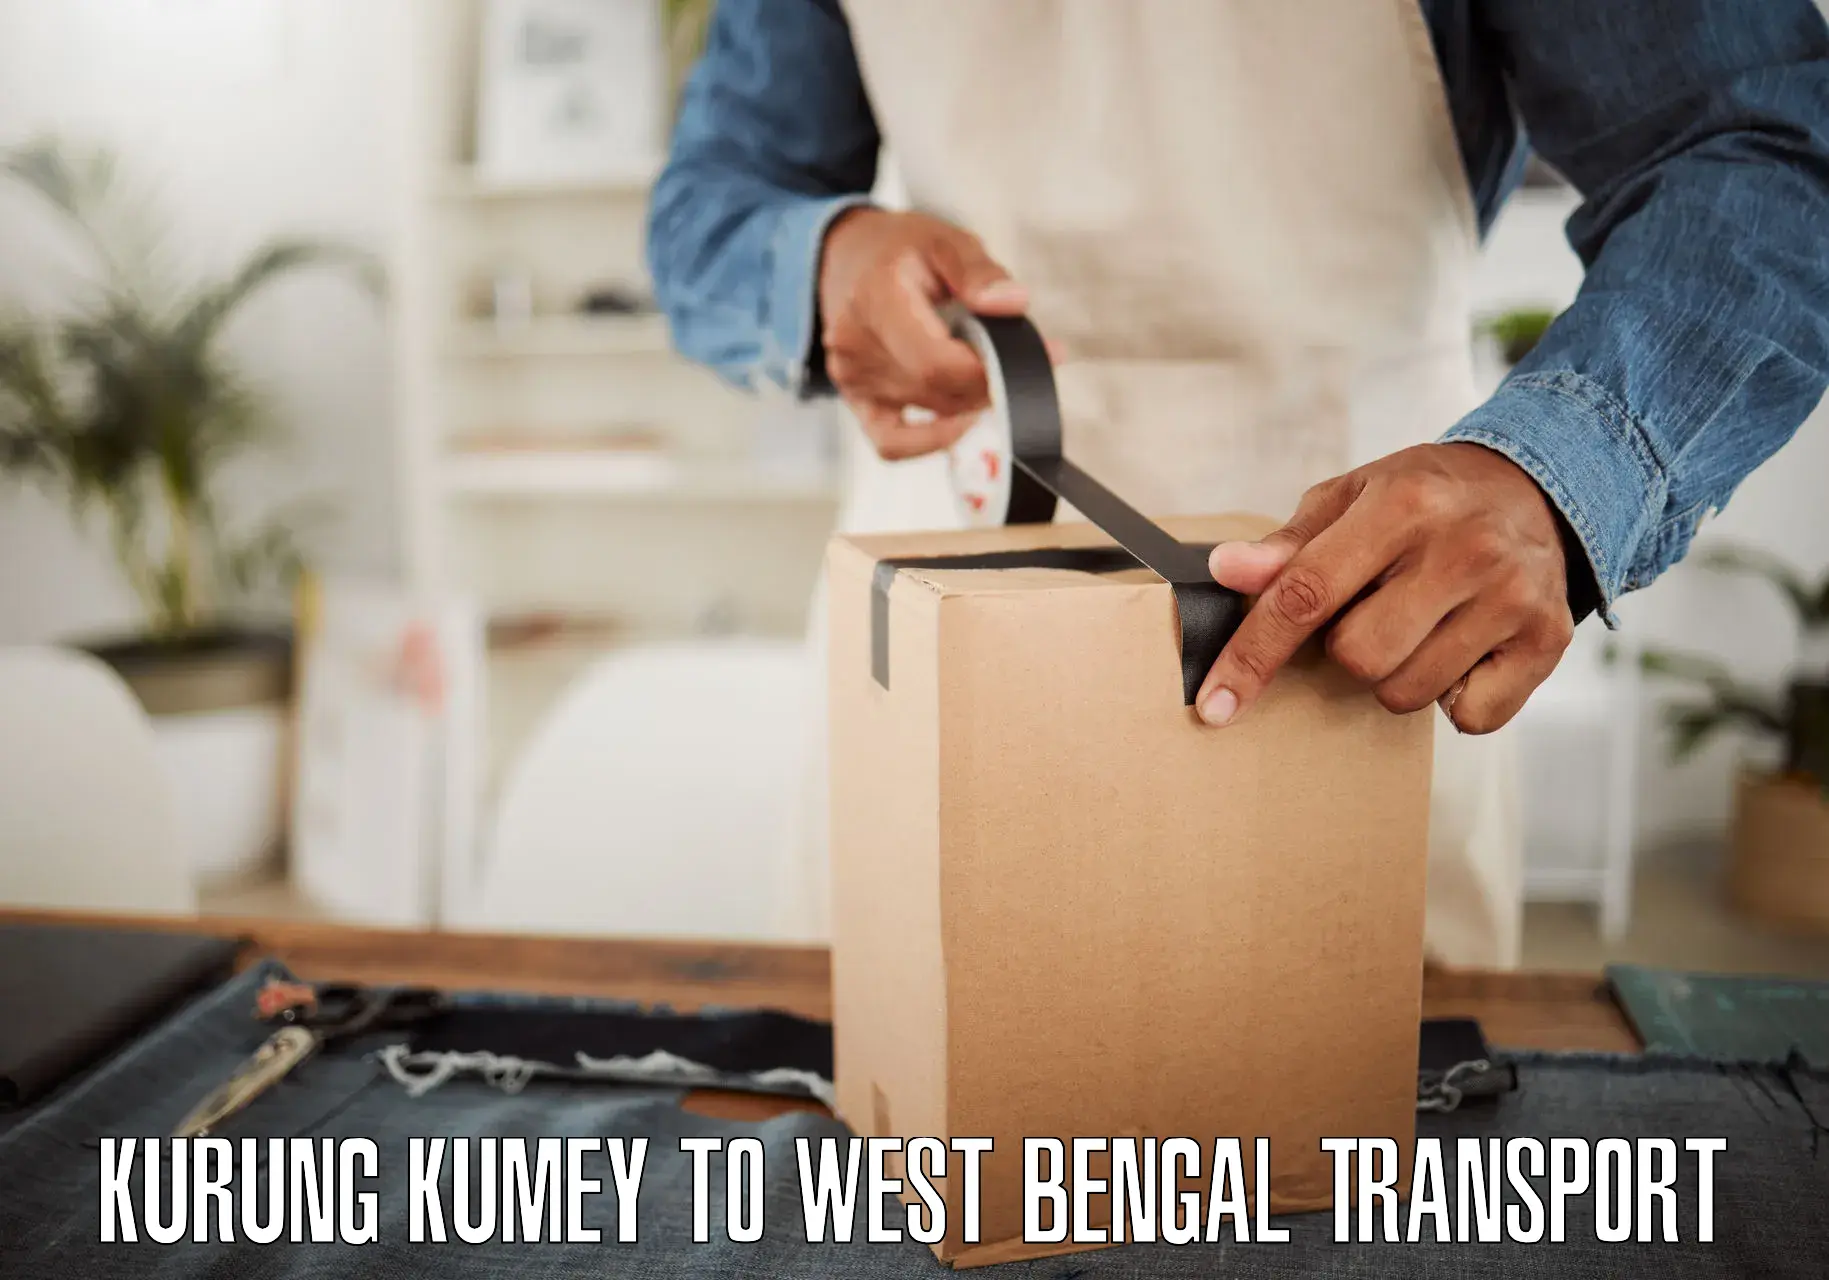 Express transport services Kurung Kumey to West Bengal